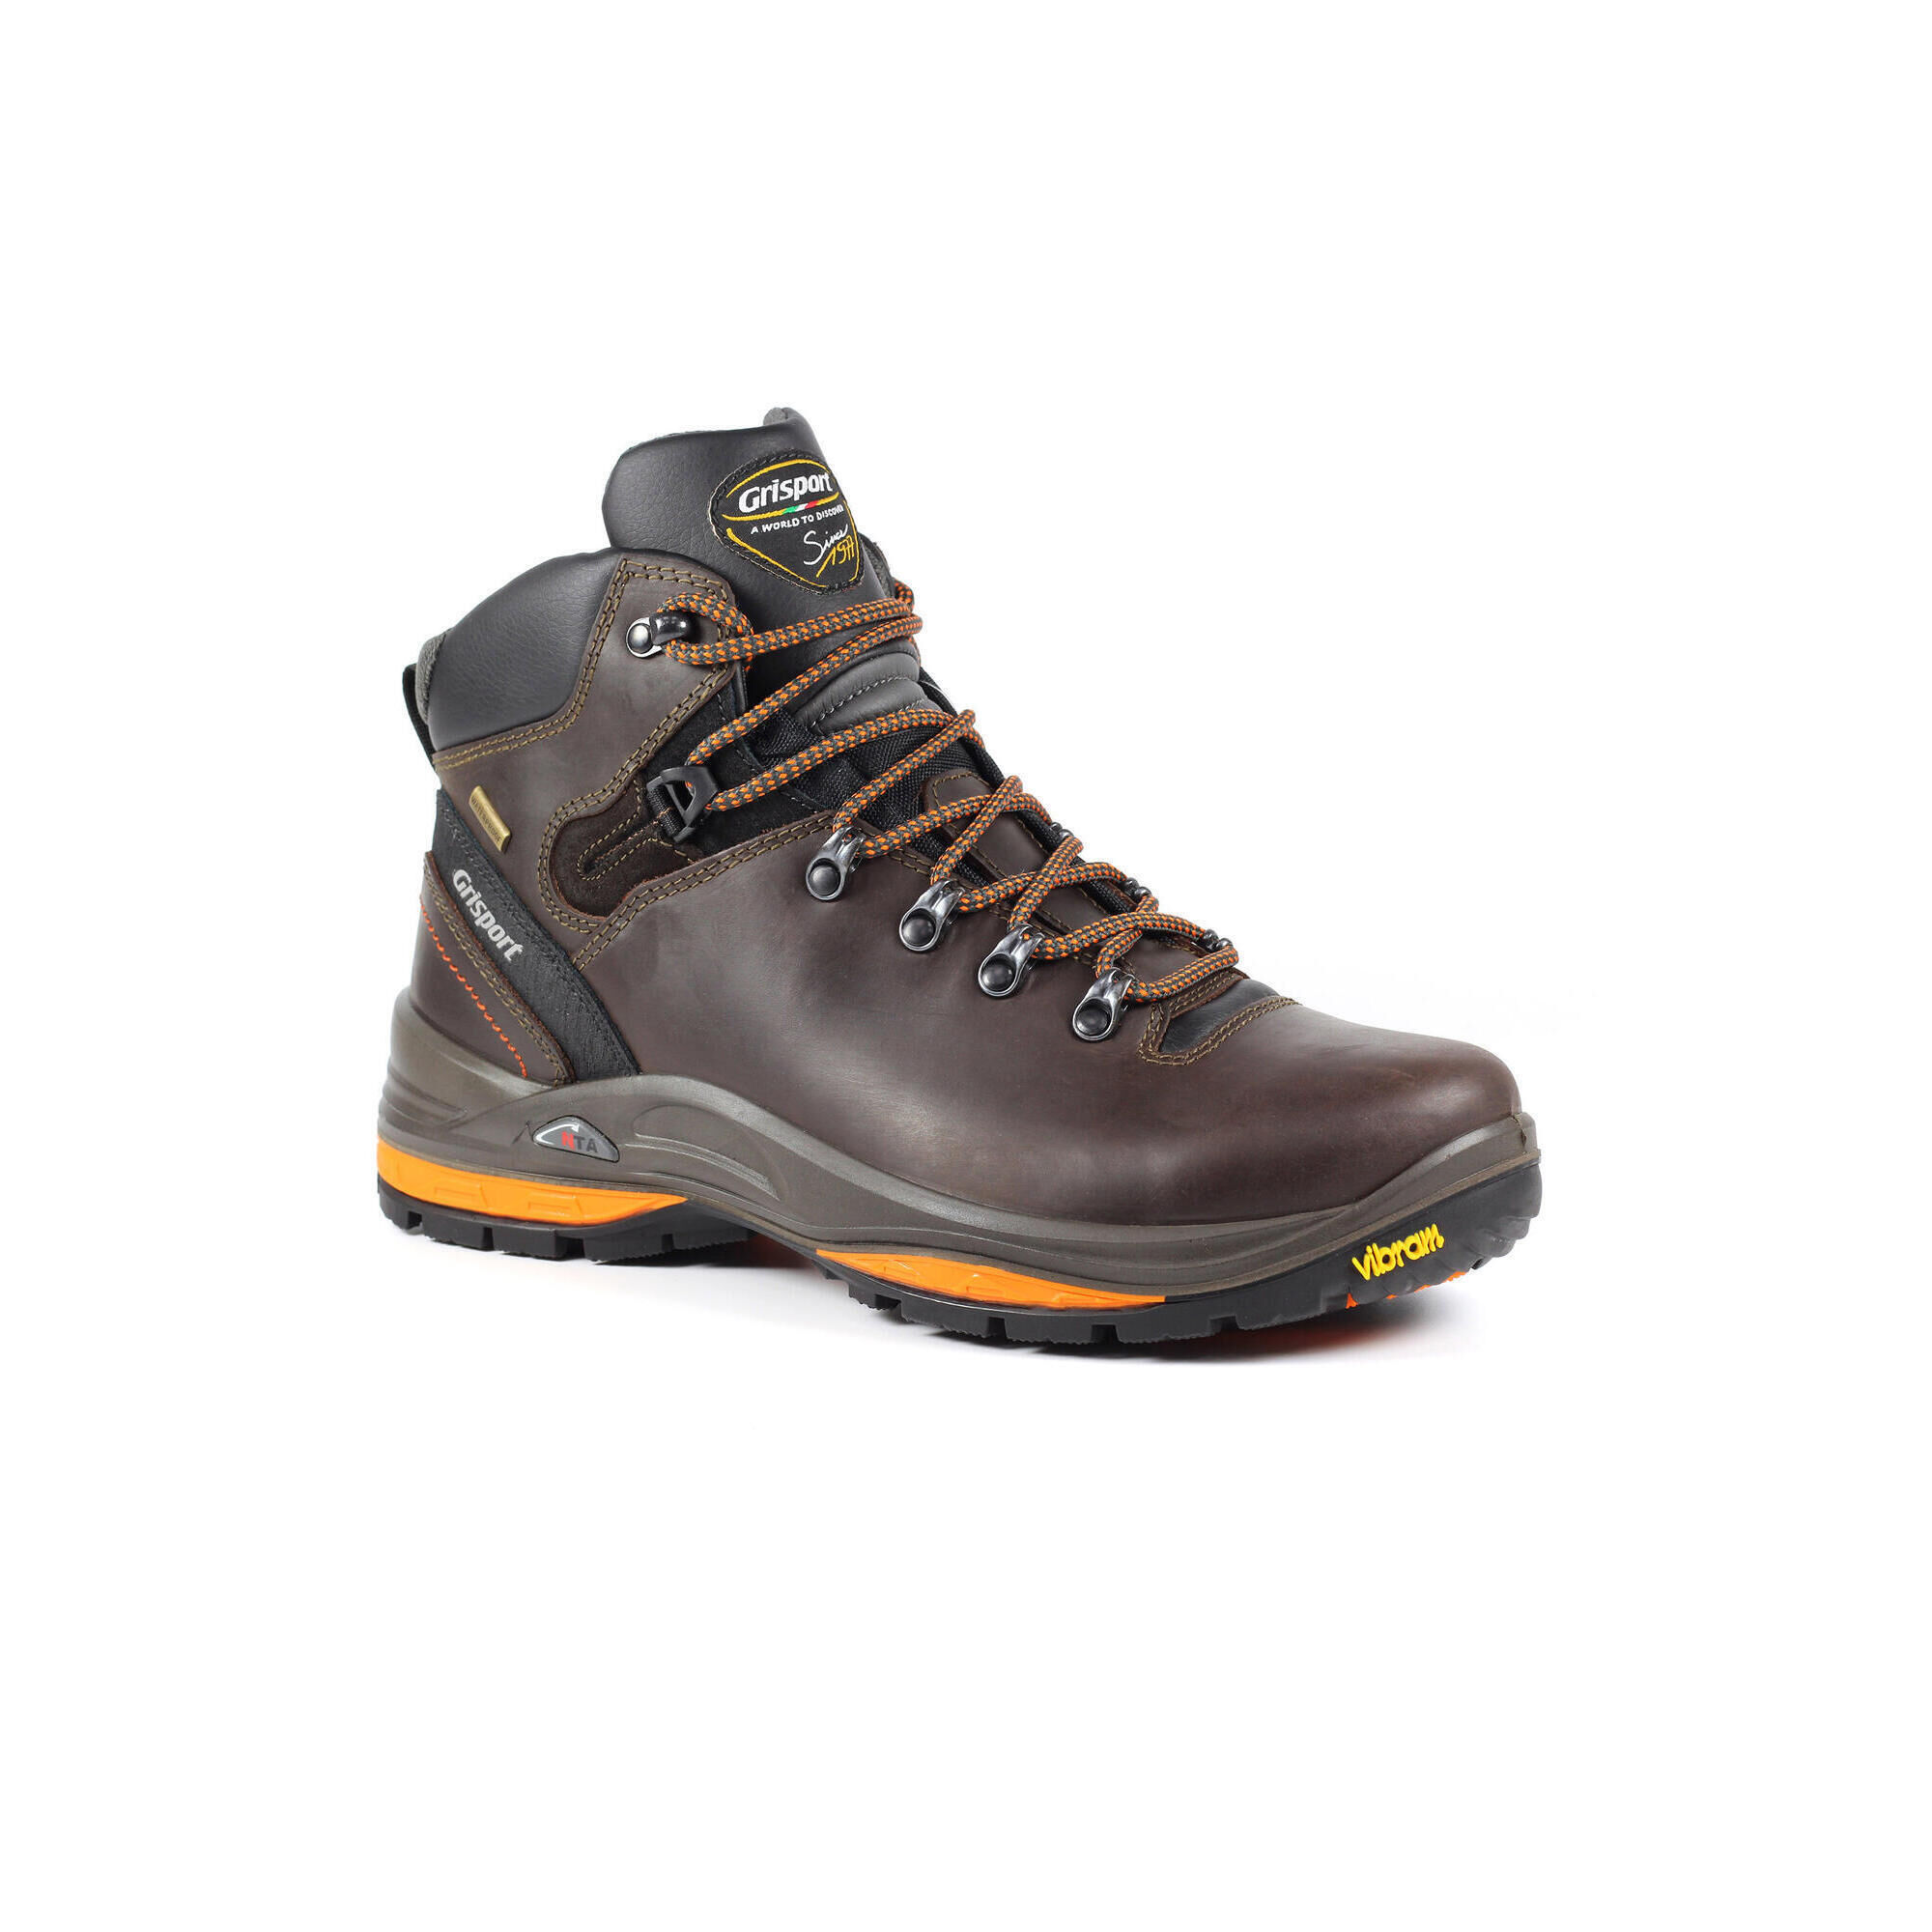 GRISPORT Saracen Brown Warerproof Hiking Boots